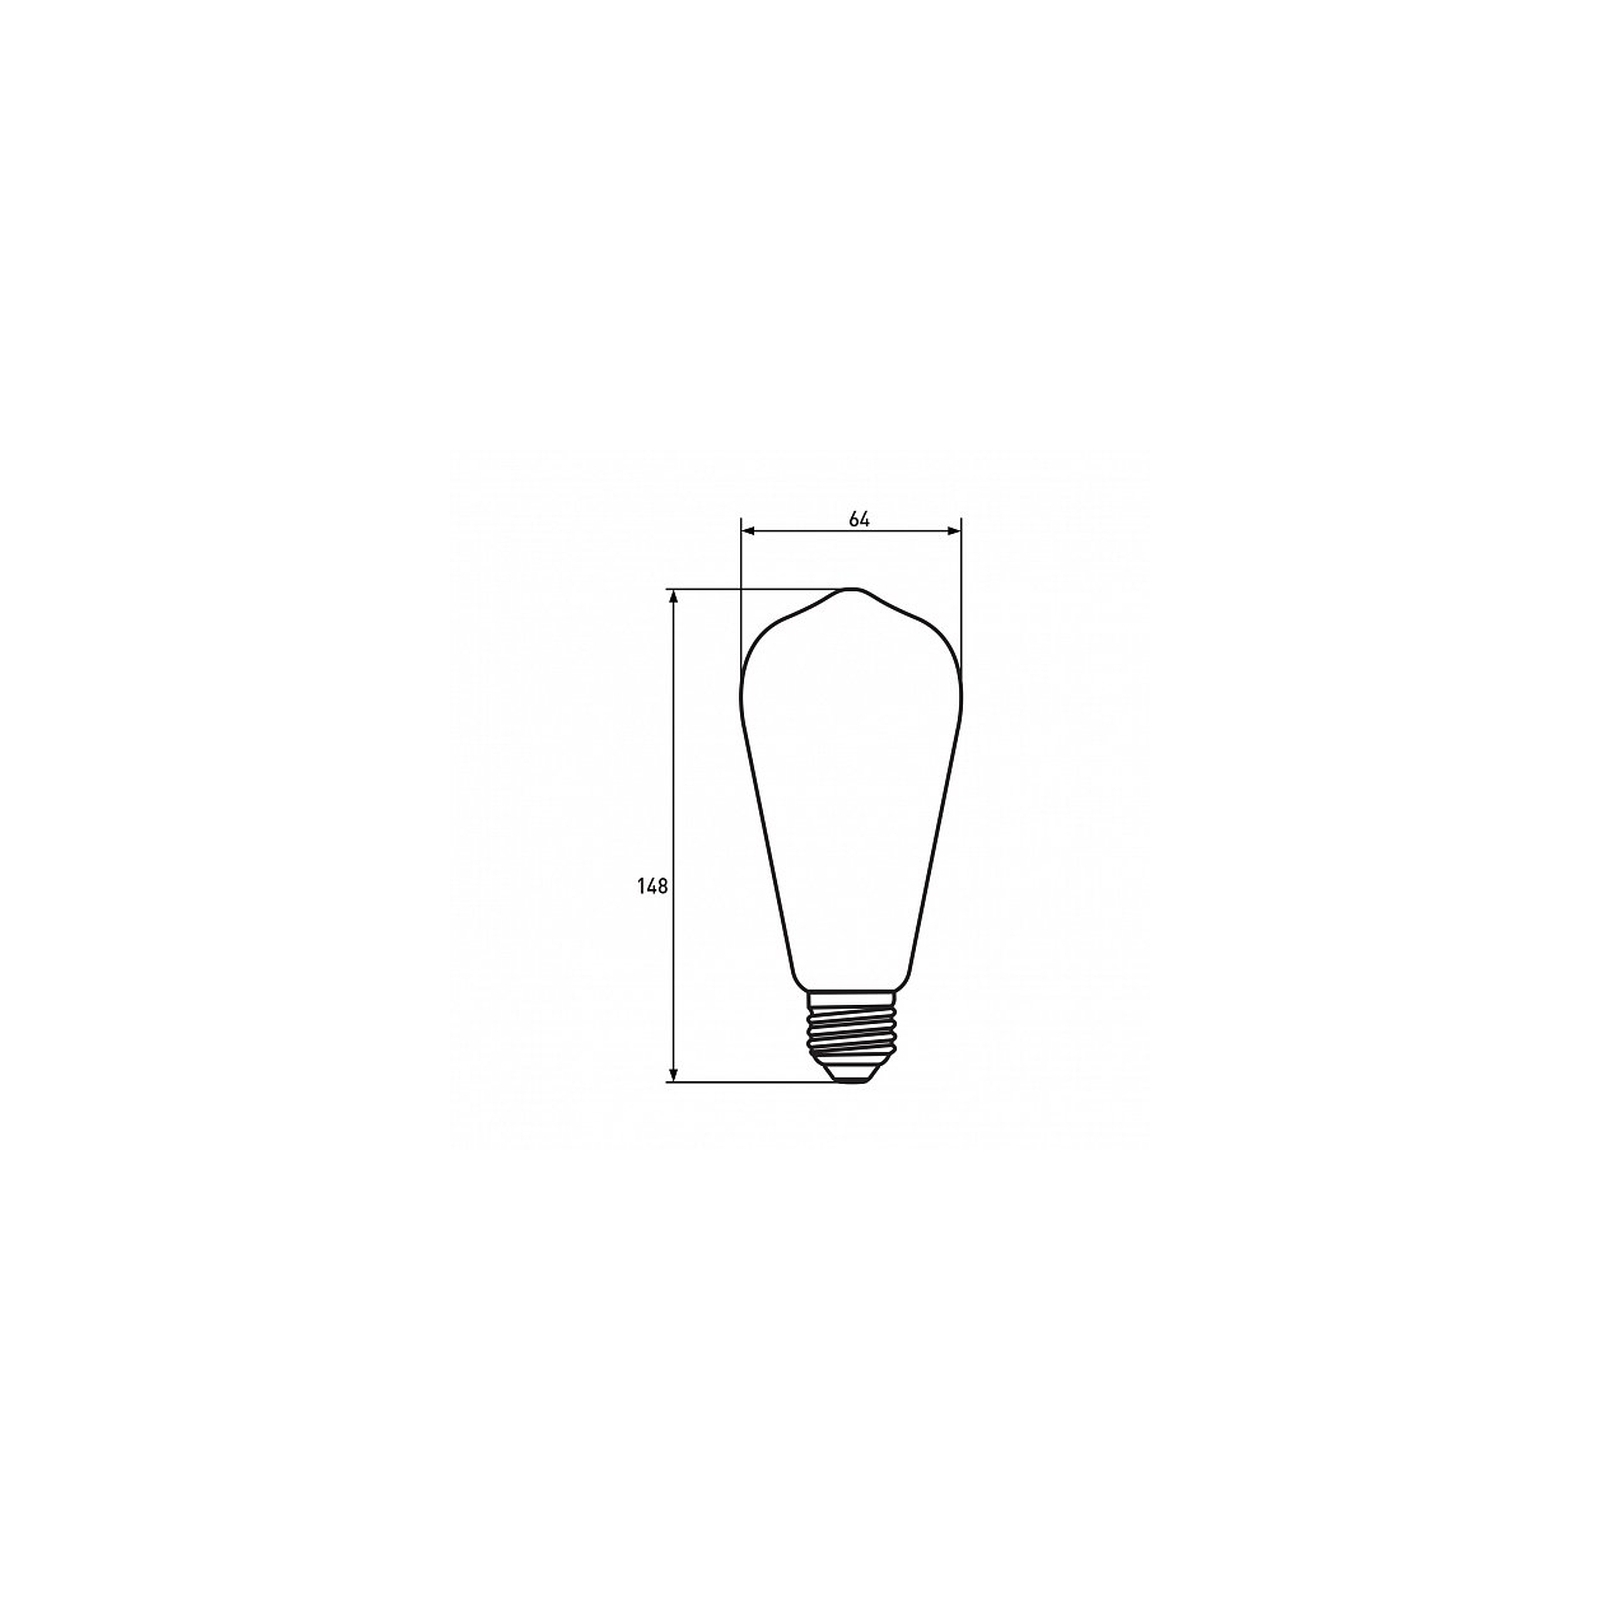 Лампочка Eurolamp ST64 7W E27 4000K (MLP-LED-ST64-07274(Amber)) зображення 3